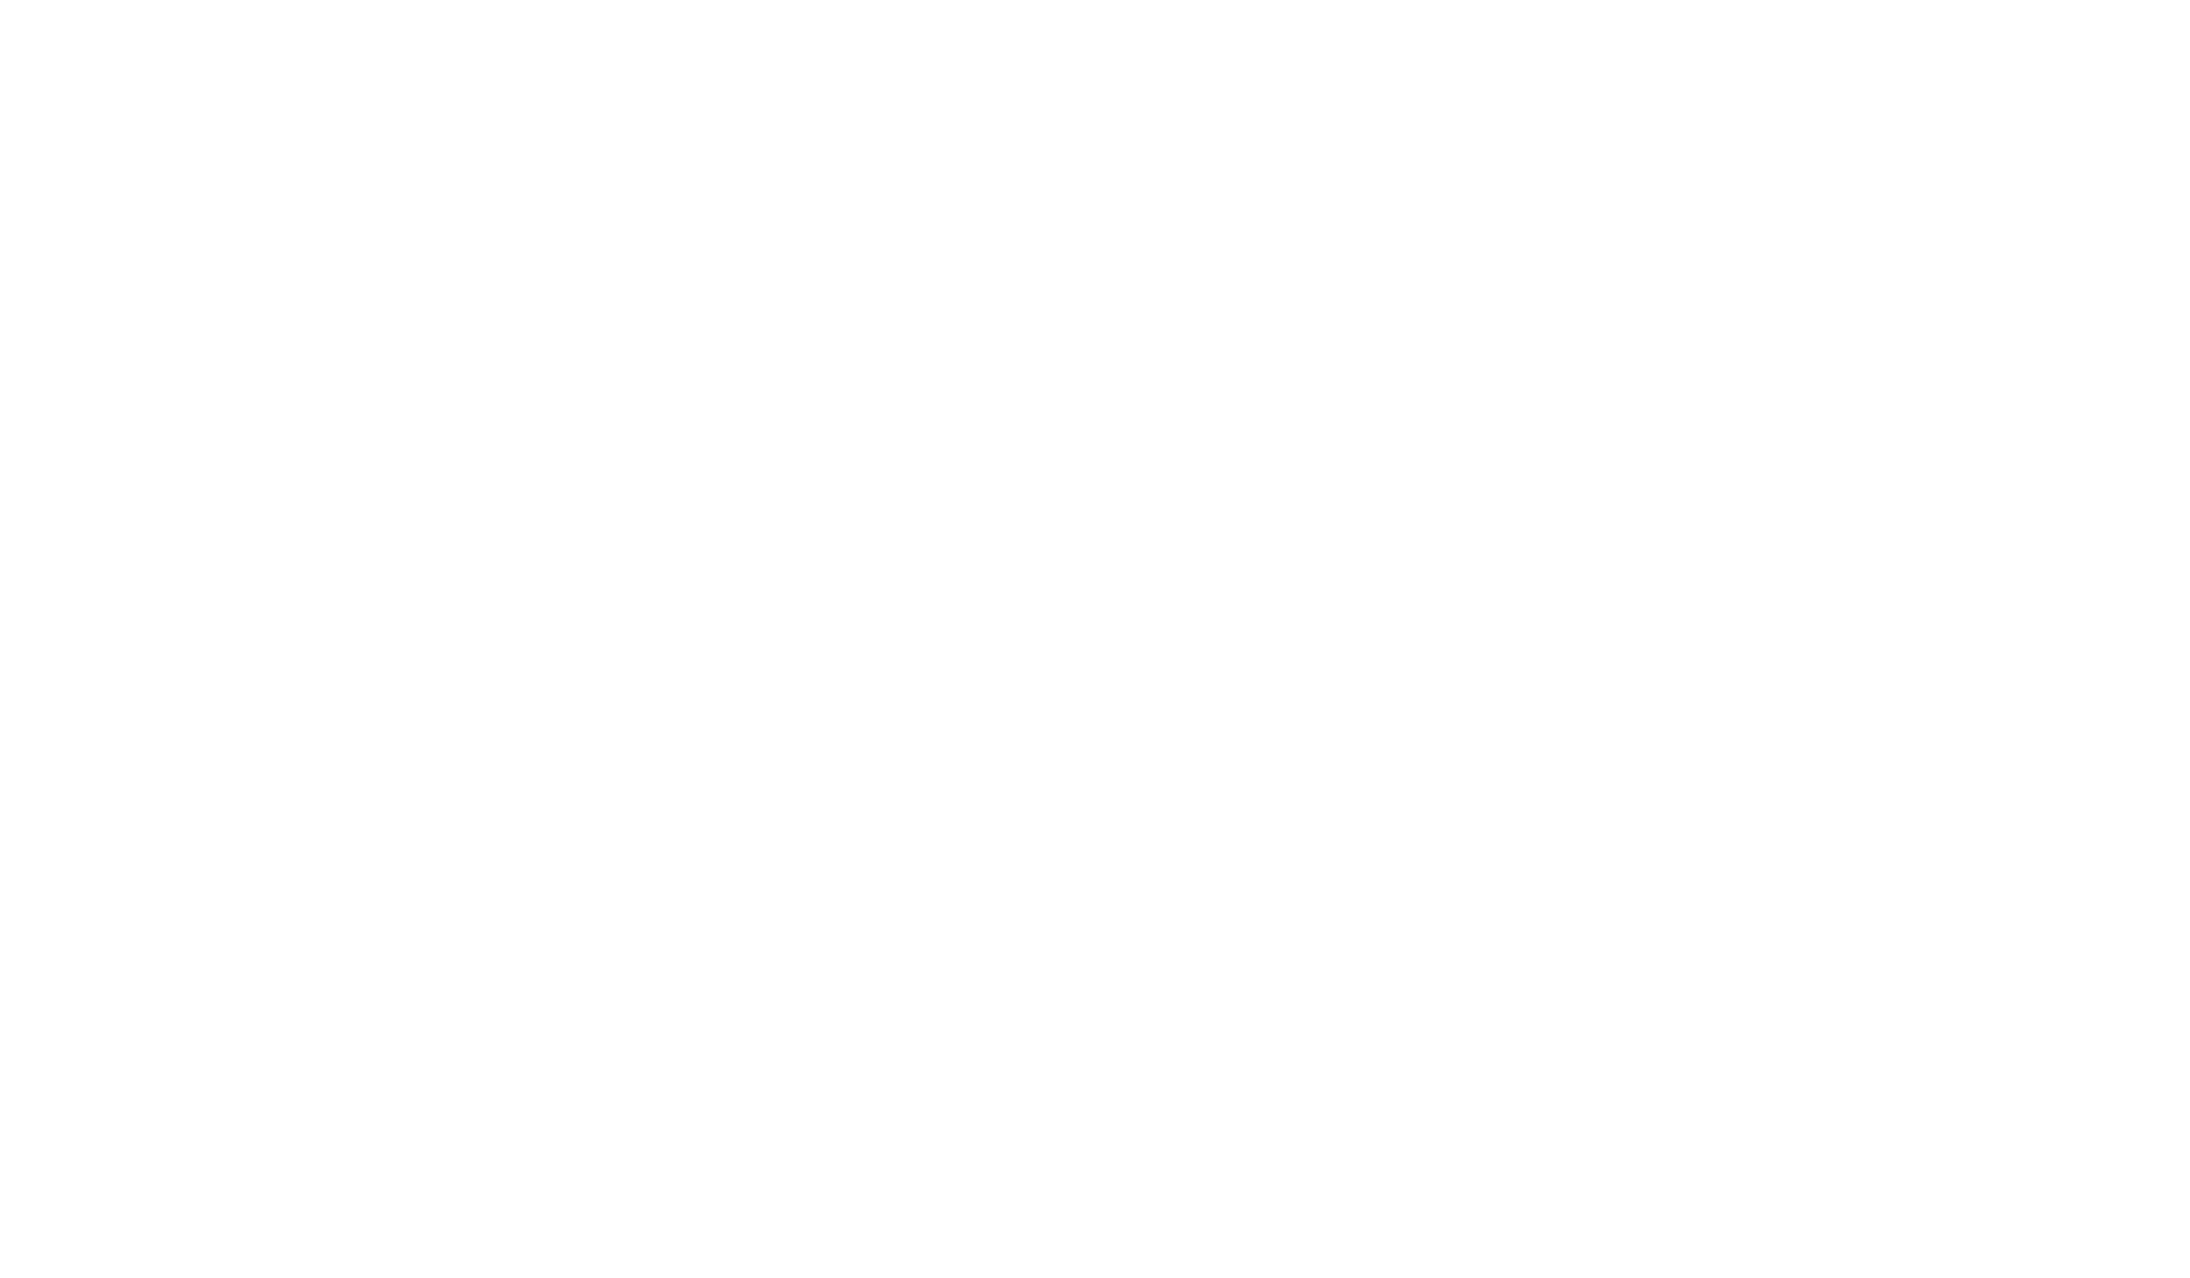 Macatawa Golf Club logo